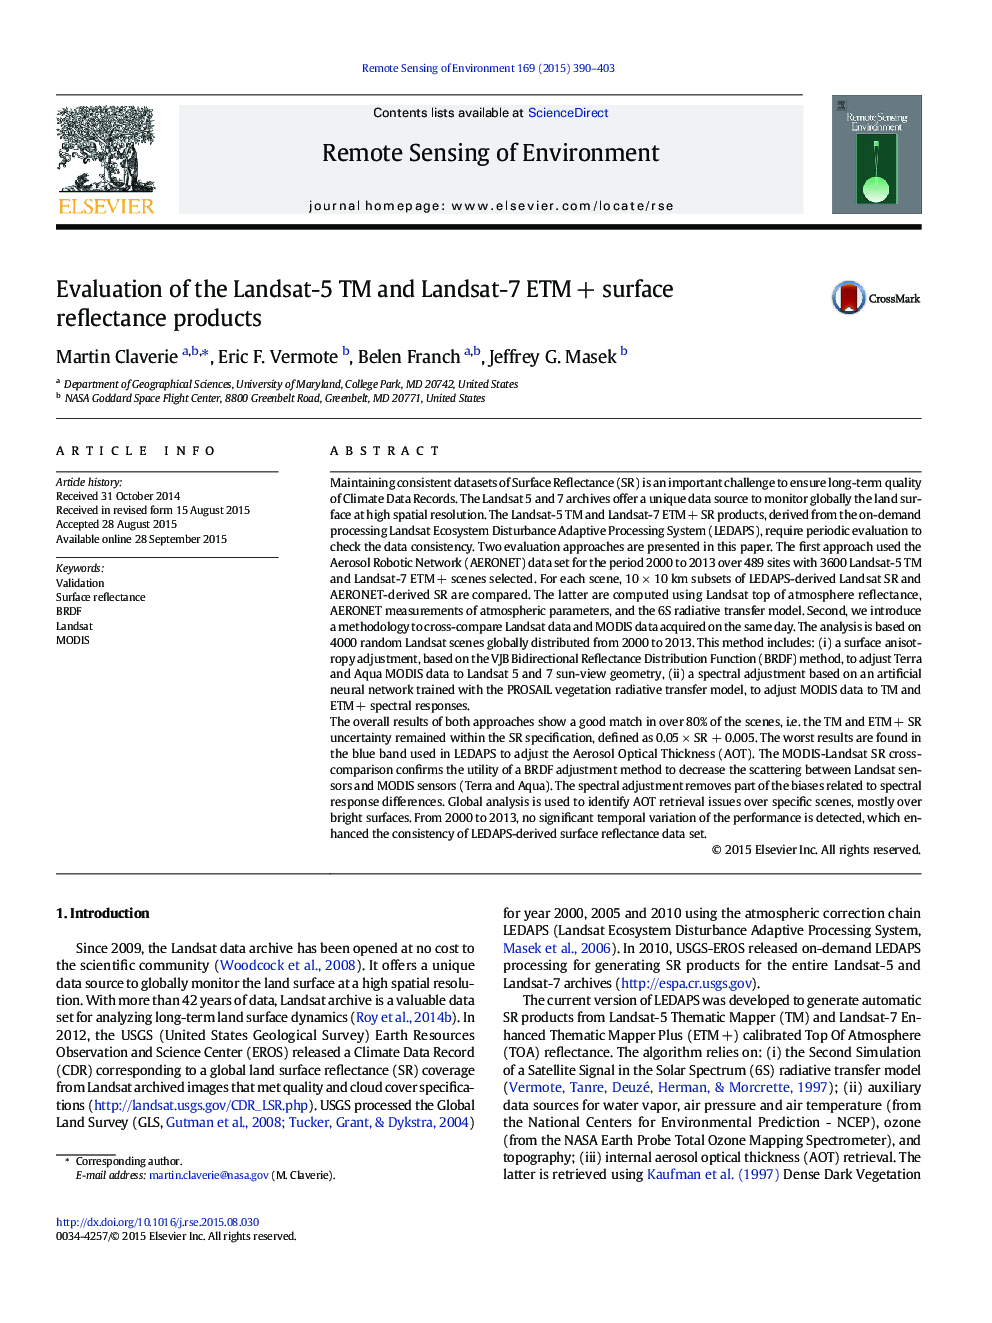 Evaluation of the Landsat-5 TM and Landsat-7 ETMÂ + surface reflectance products